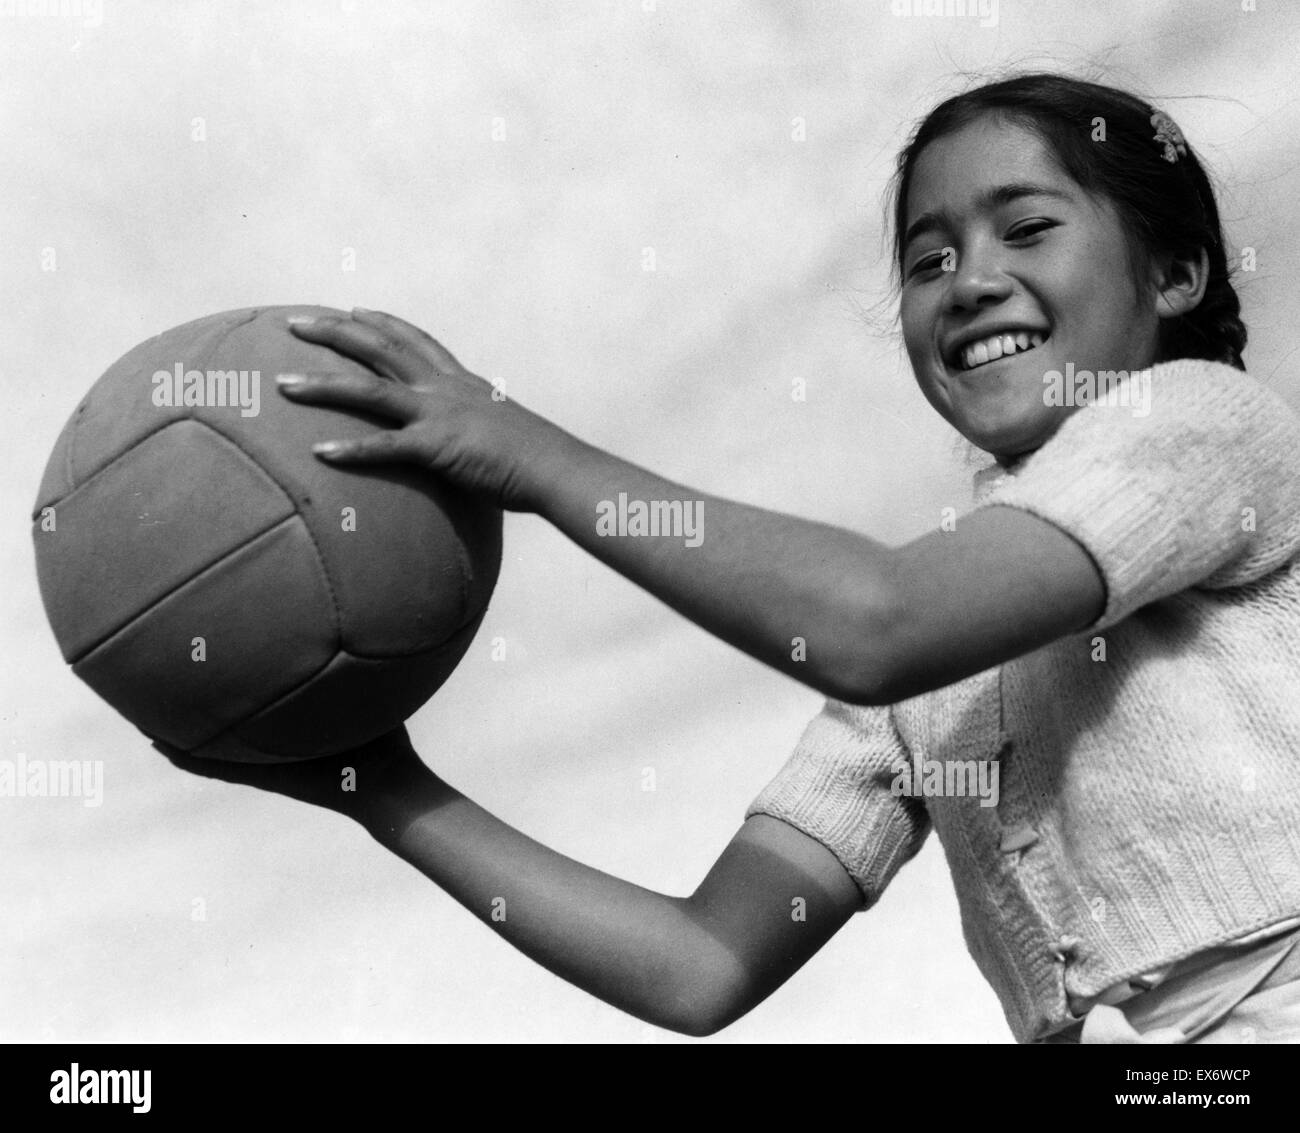 Fotodruck von Mädchen mit Volley-Ball an der Manzanar Relocation Center, California. Fotografiert von Ansel Adams (1902-1984). Datiert 1943 Stockfoto